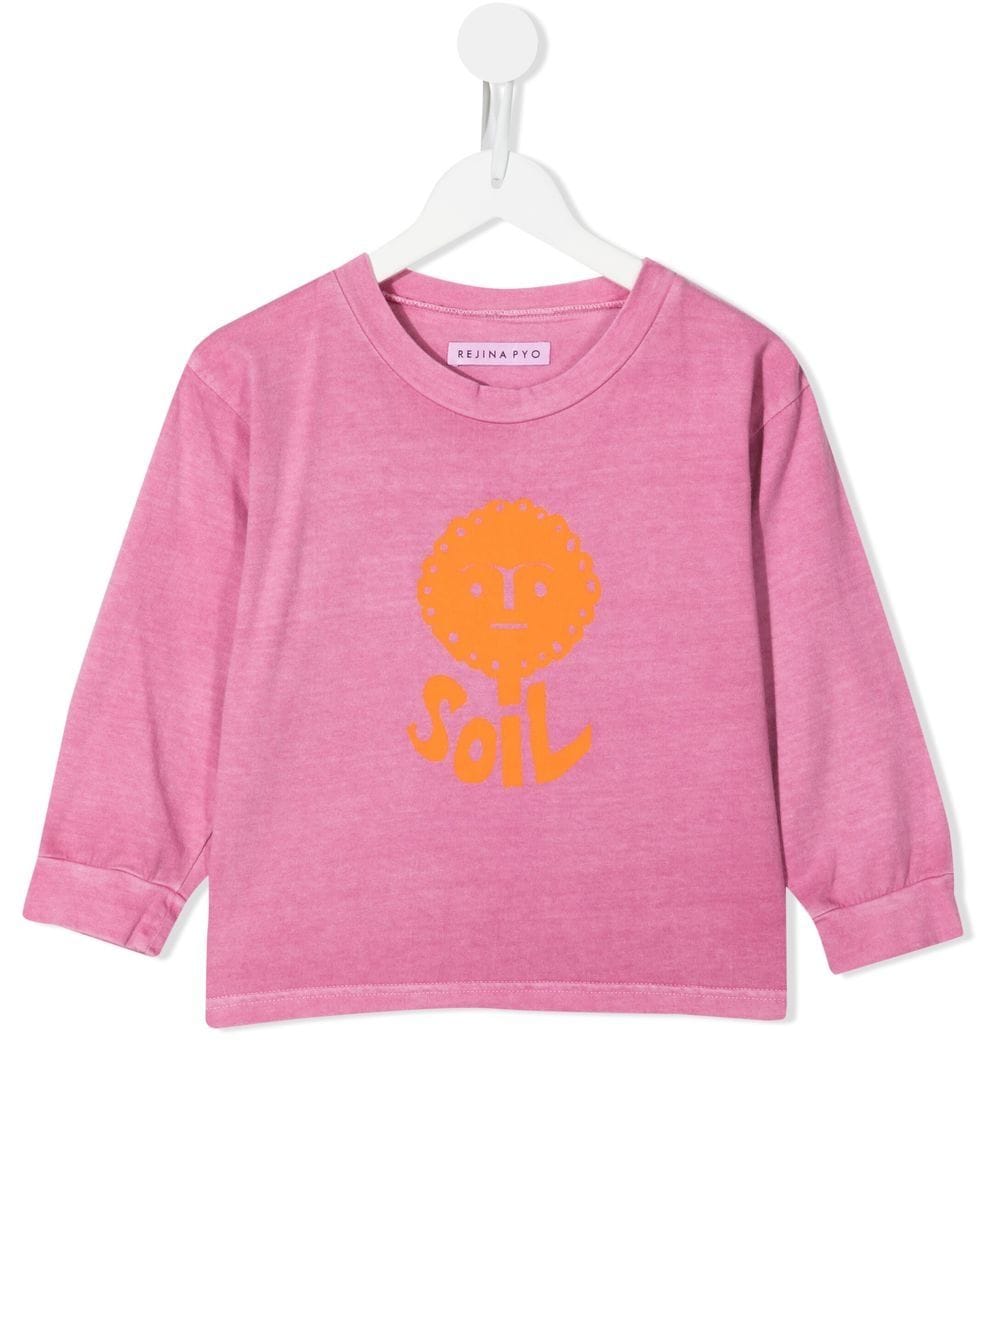 Rejina Pyo Marley T-Shirt aus Bio-Baumwolle - Violett von Rejina Pyo